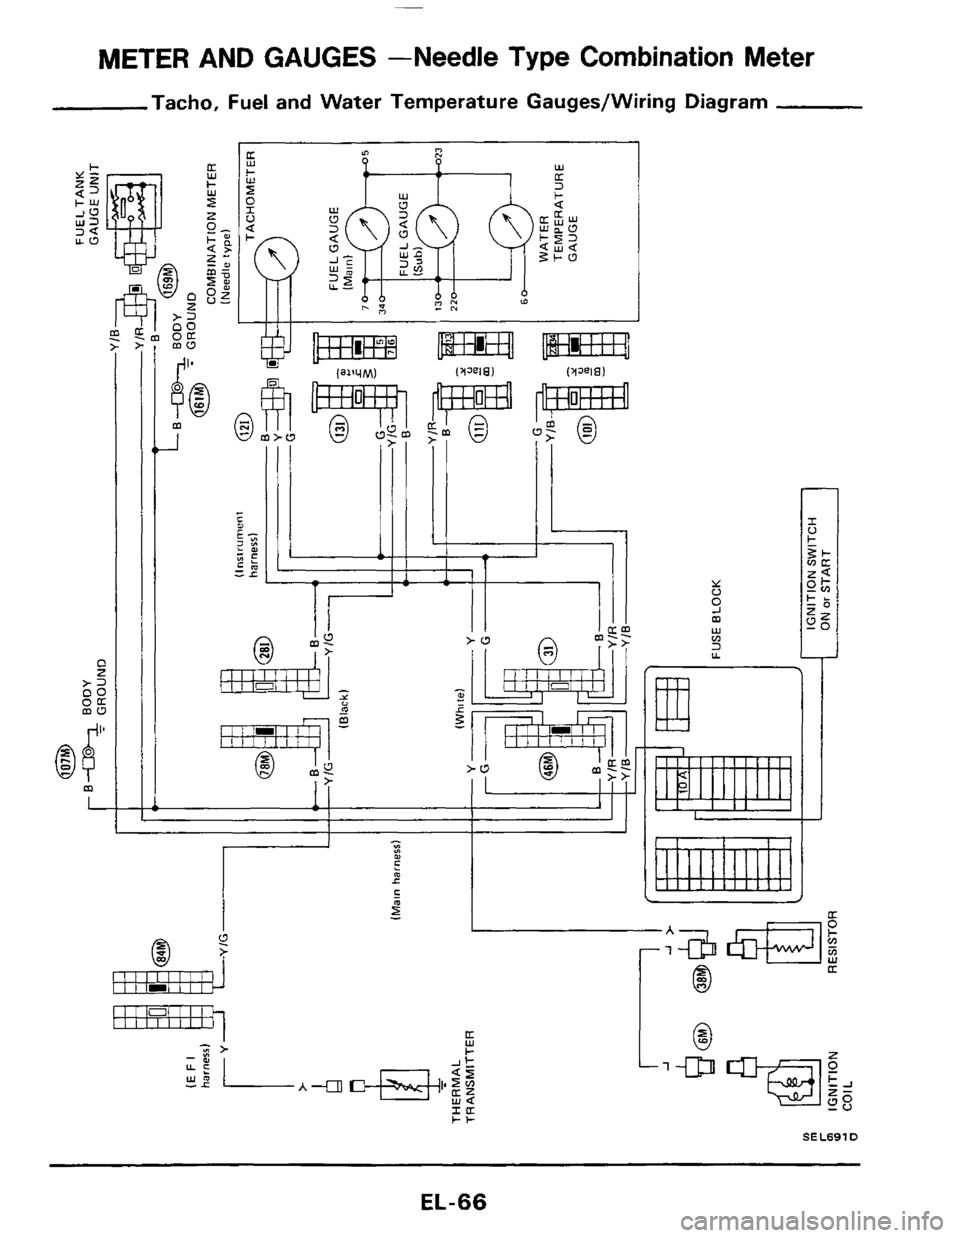 NISSAN 300ZX 1984 Z31 Electrical System Workshop Manual METER AND GAUGES  -Needle Type Combination Meter 
Tacho,  Fuel  and Water  Temperature  Gauges/Wiring  Diagram 
C z >= oc 
:E 
I 
6$ m 
L 
m 
_I 
I I 
Y - m - 
llllllI 
1: 
I 
I1 I01 I I I IIIIIIII 
r